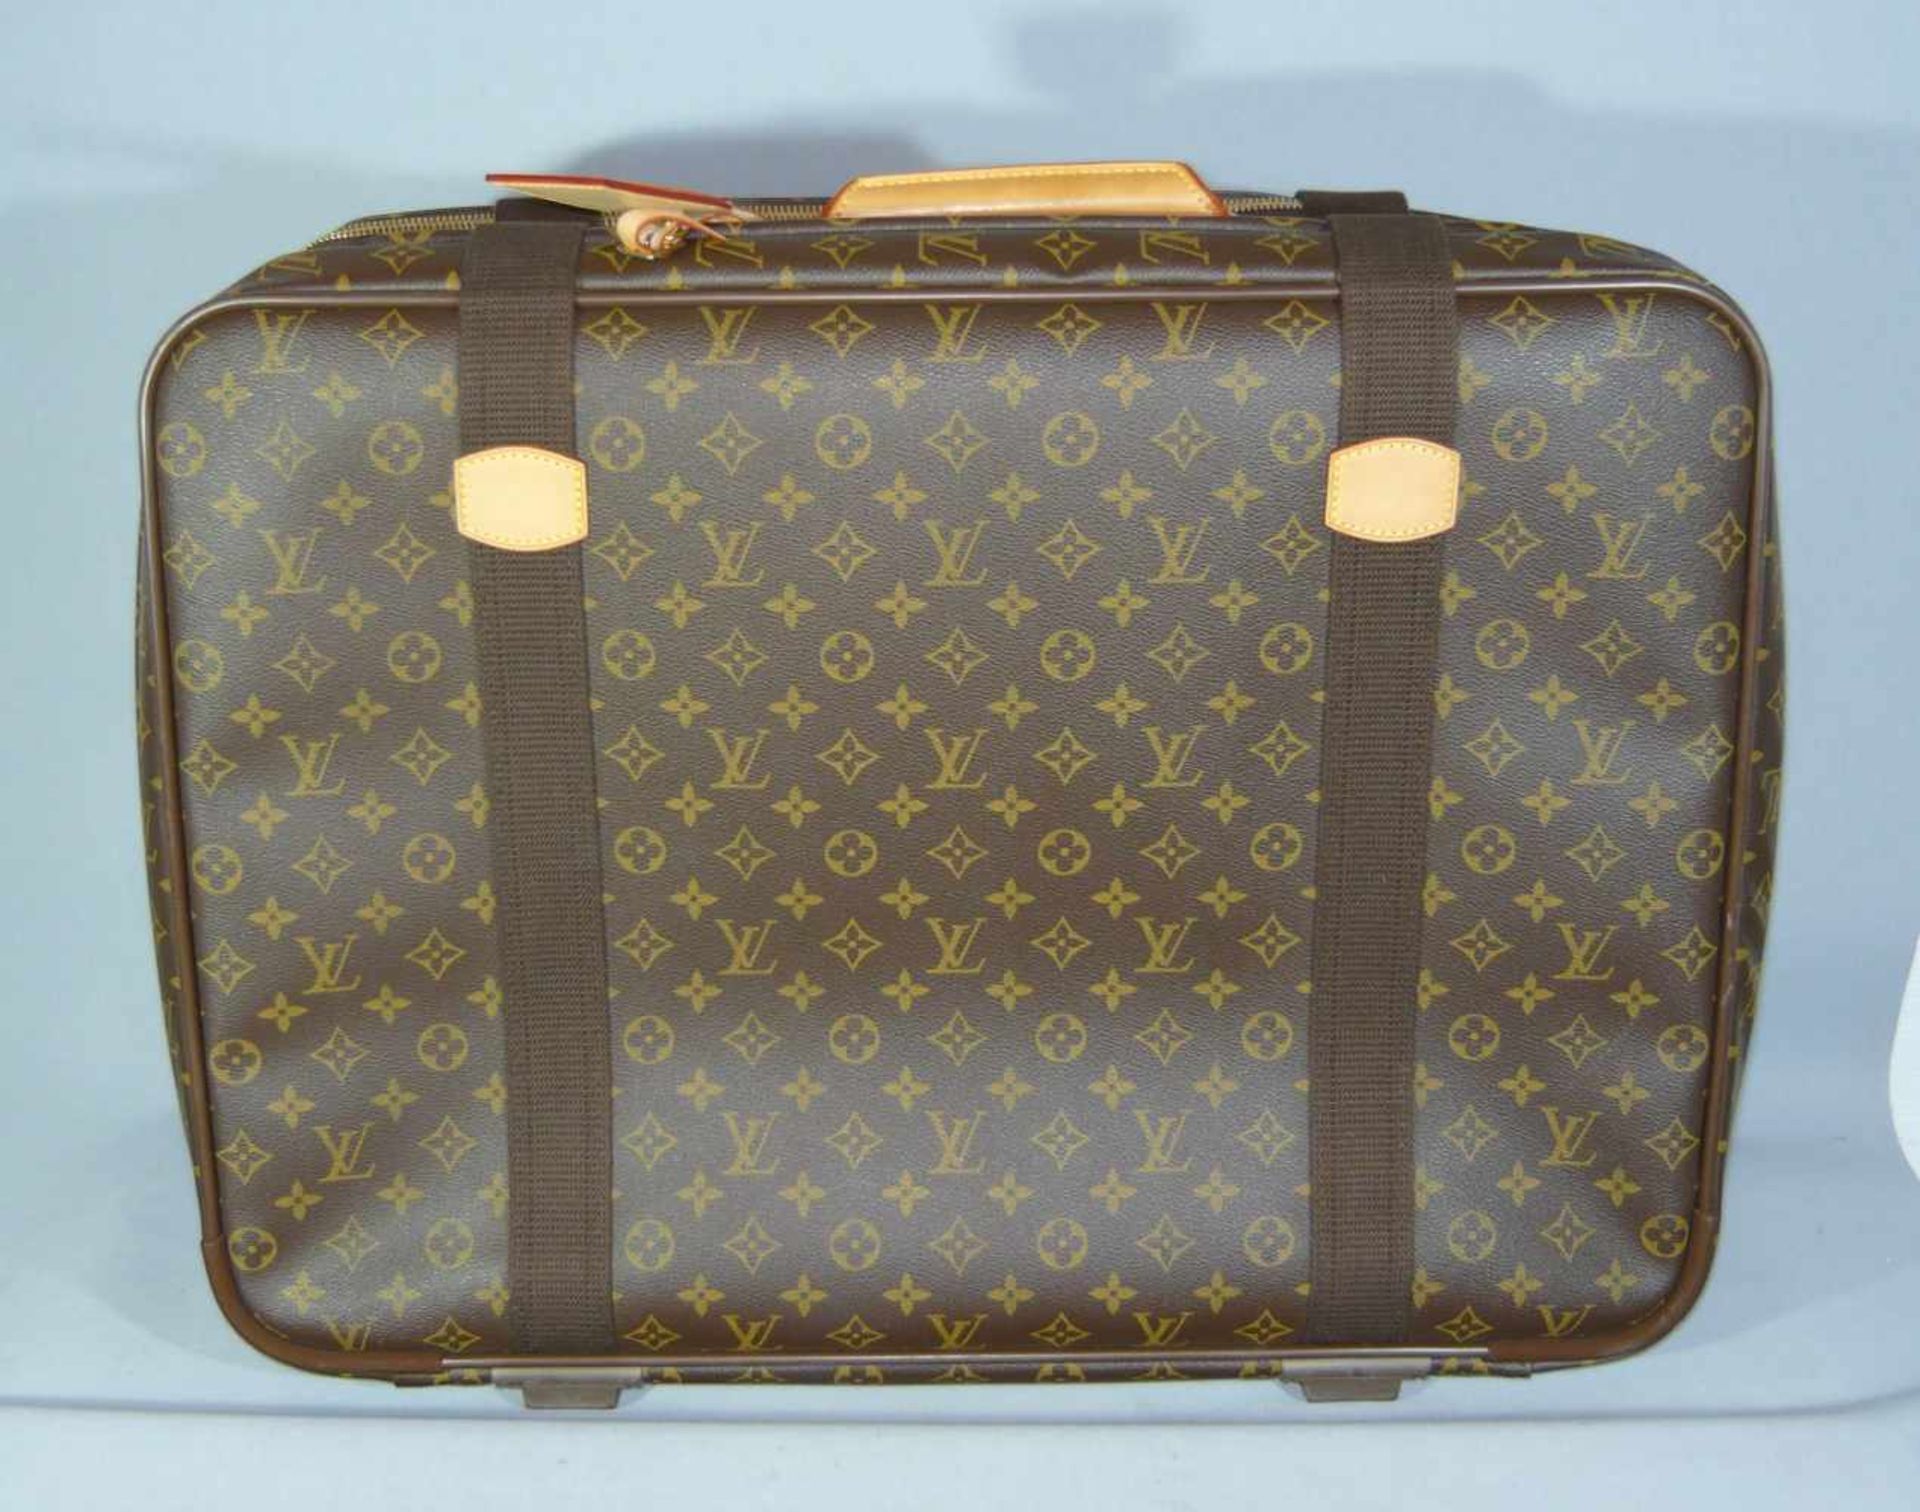 Louis Vuitton. Reisetasche. Einwandfreier Zustand, wie neu. Maße ca. 14x44x60 cm.Louis Vuitton. - Image 3 of 4